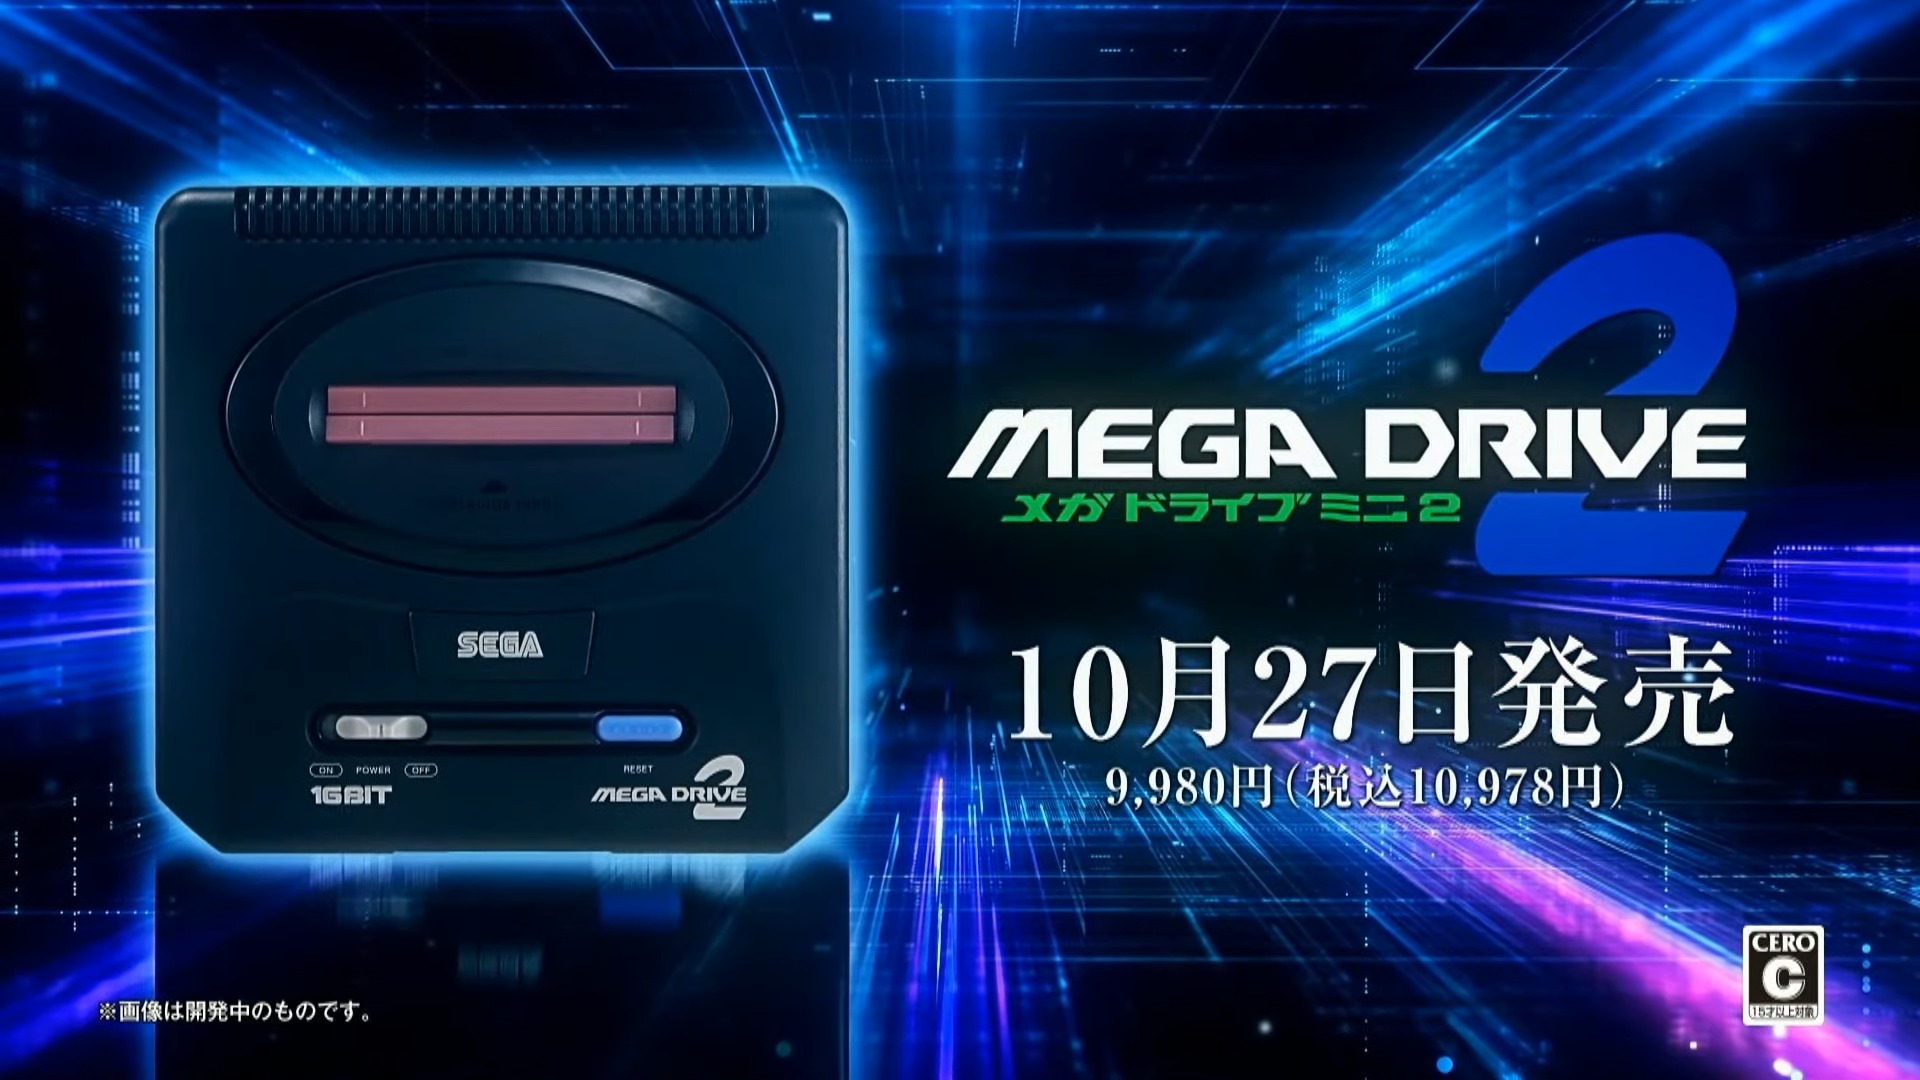 『メガドライブミニ2』を10月27日に発売！　メガCDやアーケードの移植作、新作を含む50タイトル以上収録で価格は1万978円